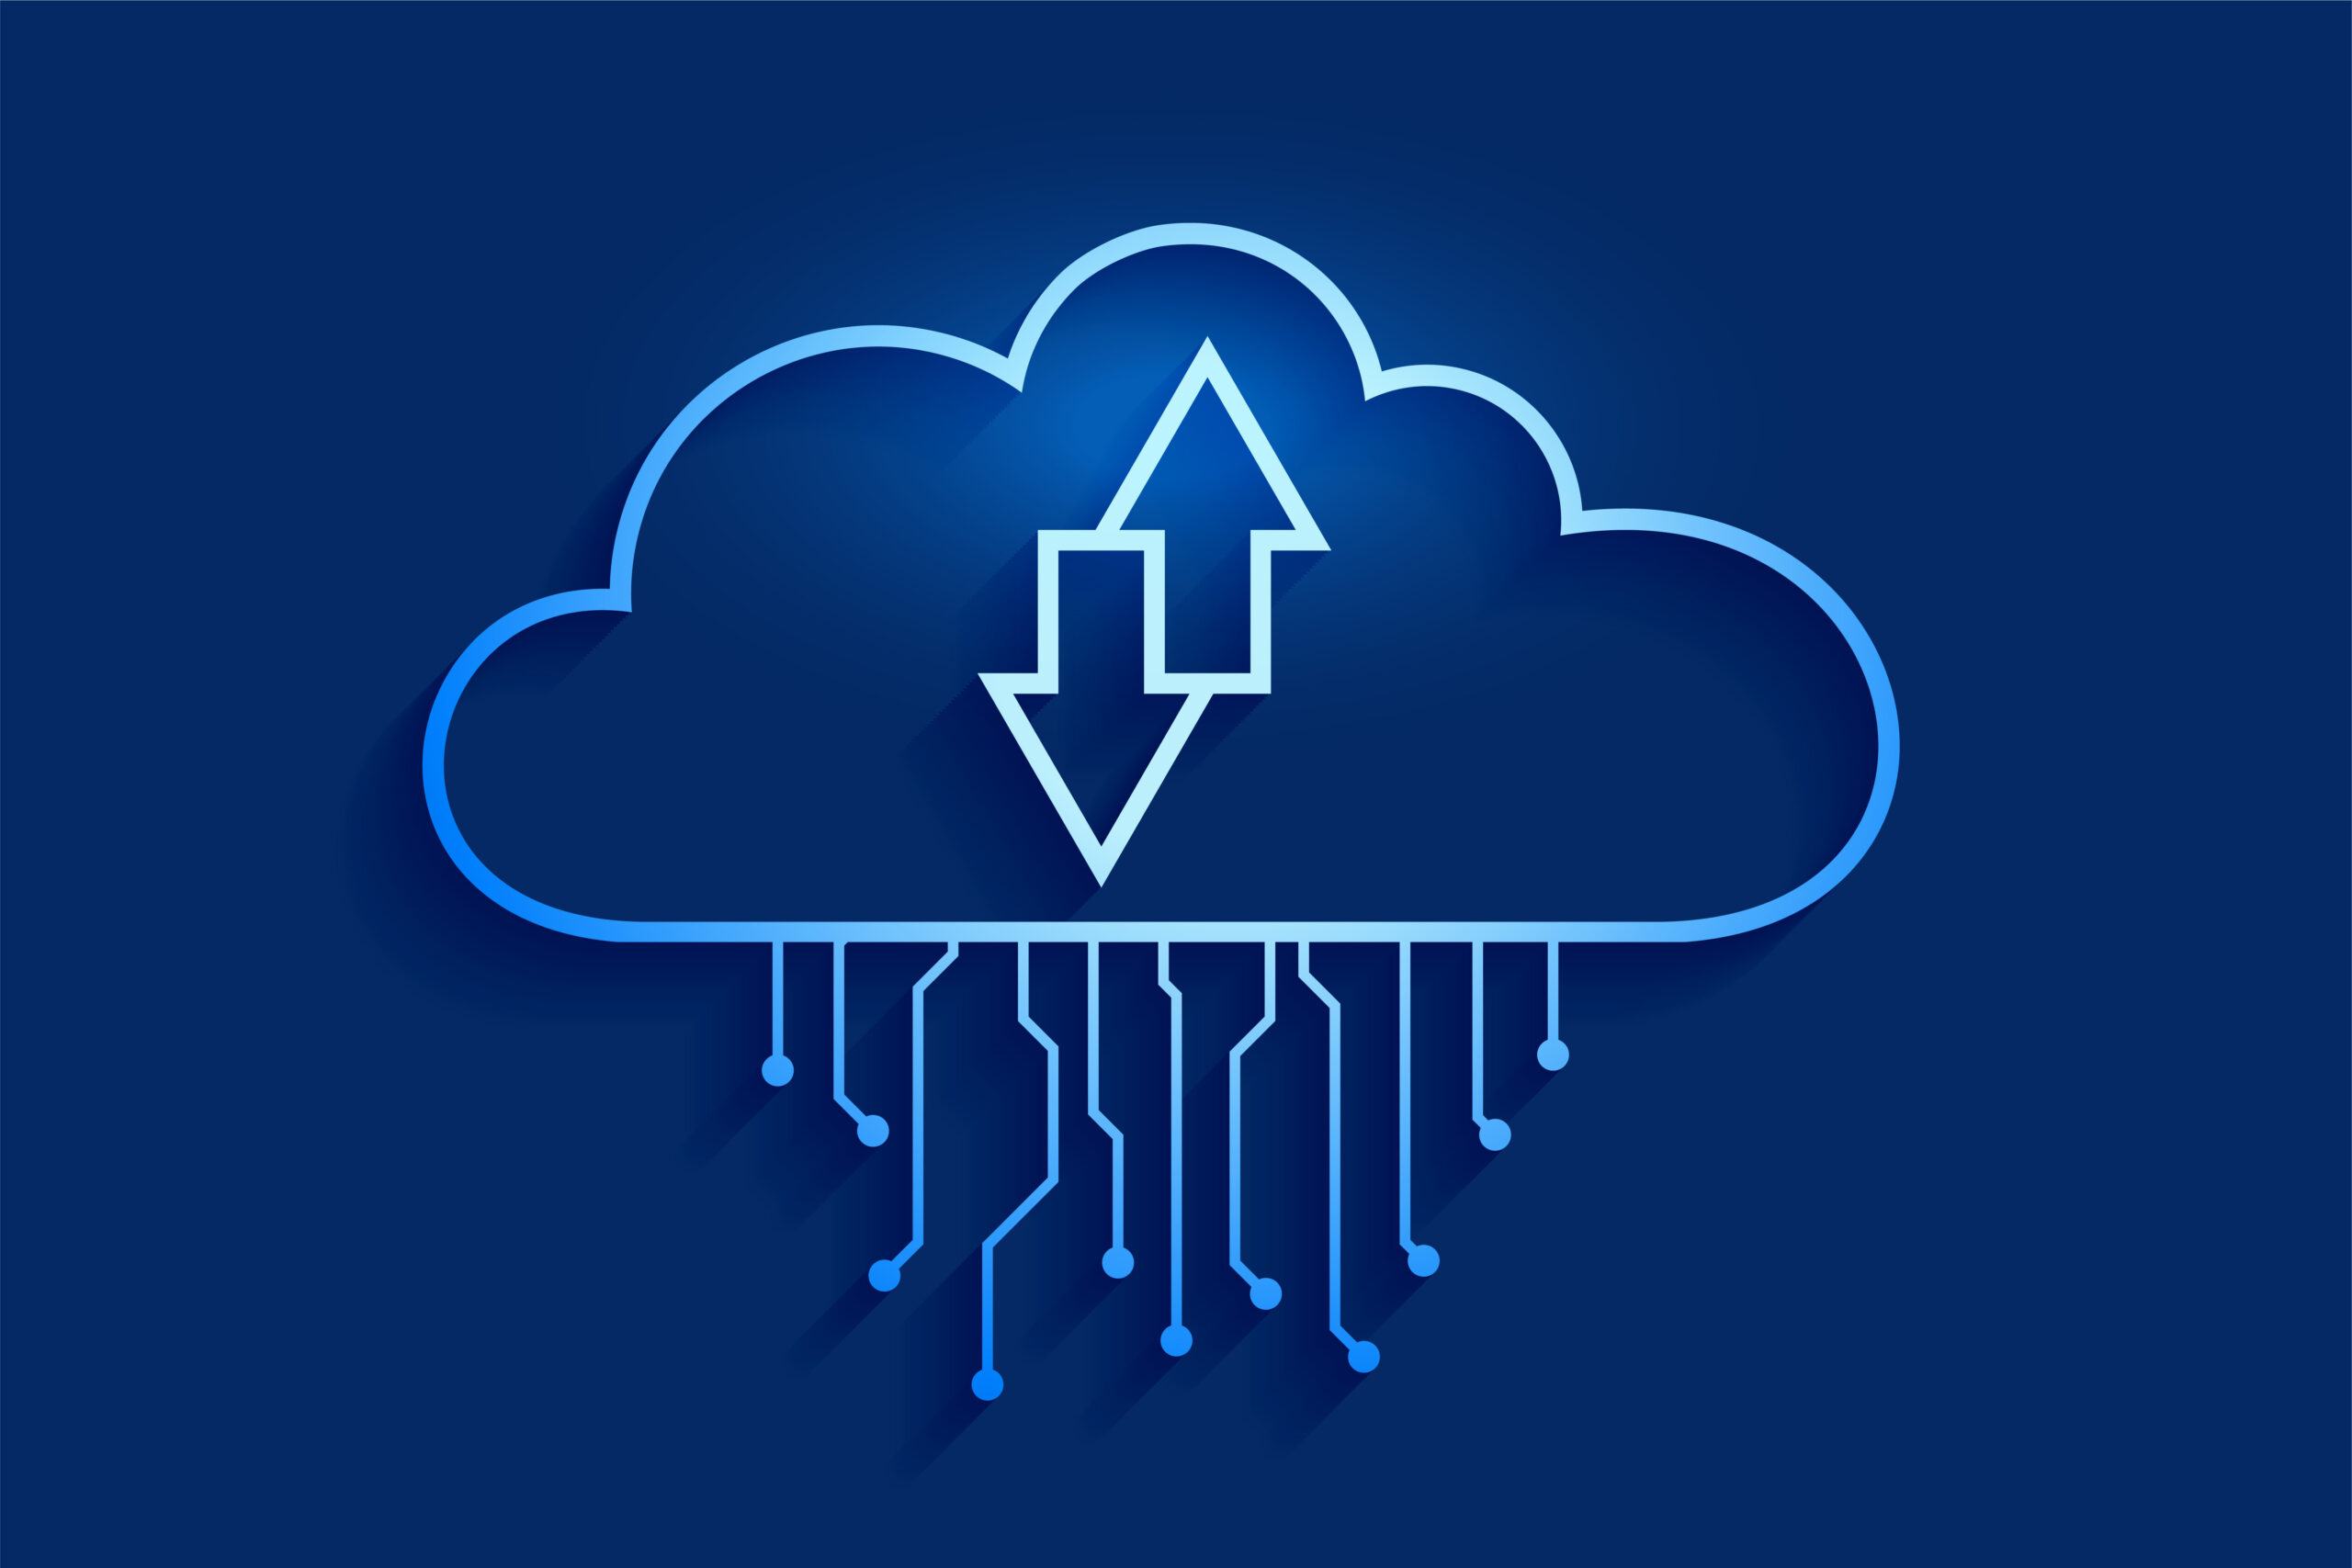 Backup em Nuvem: a solução ideal para proteger dados e arquivos de forma  segura